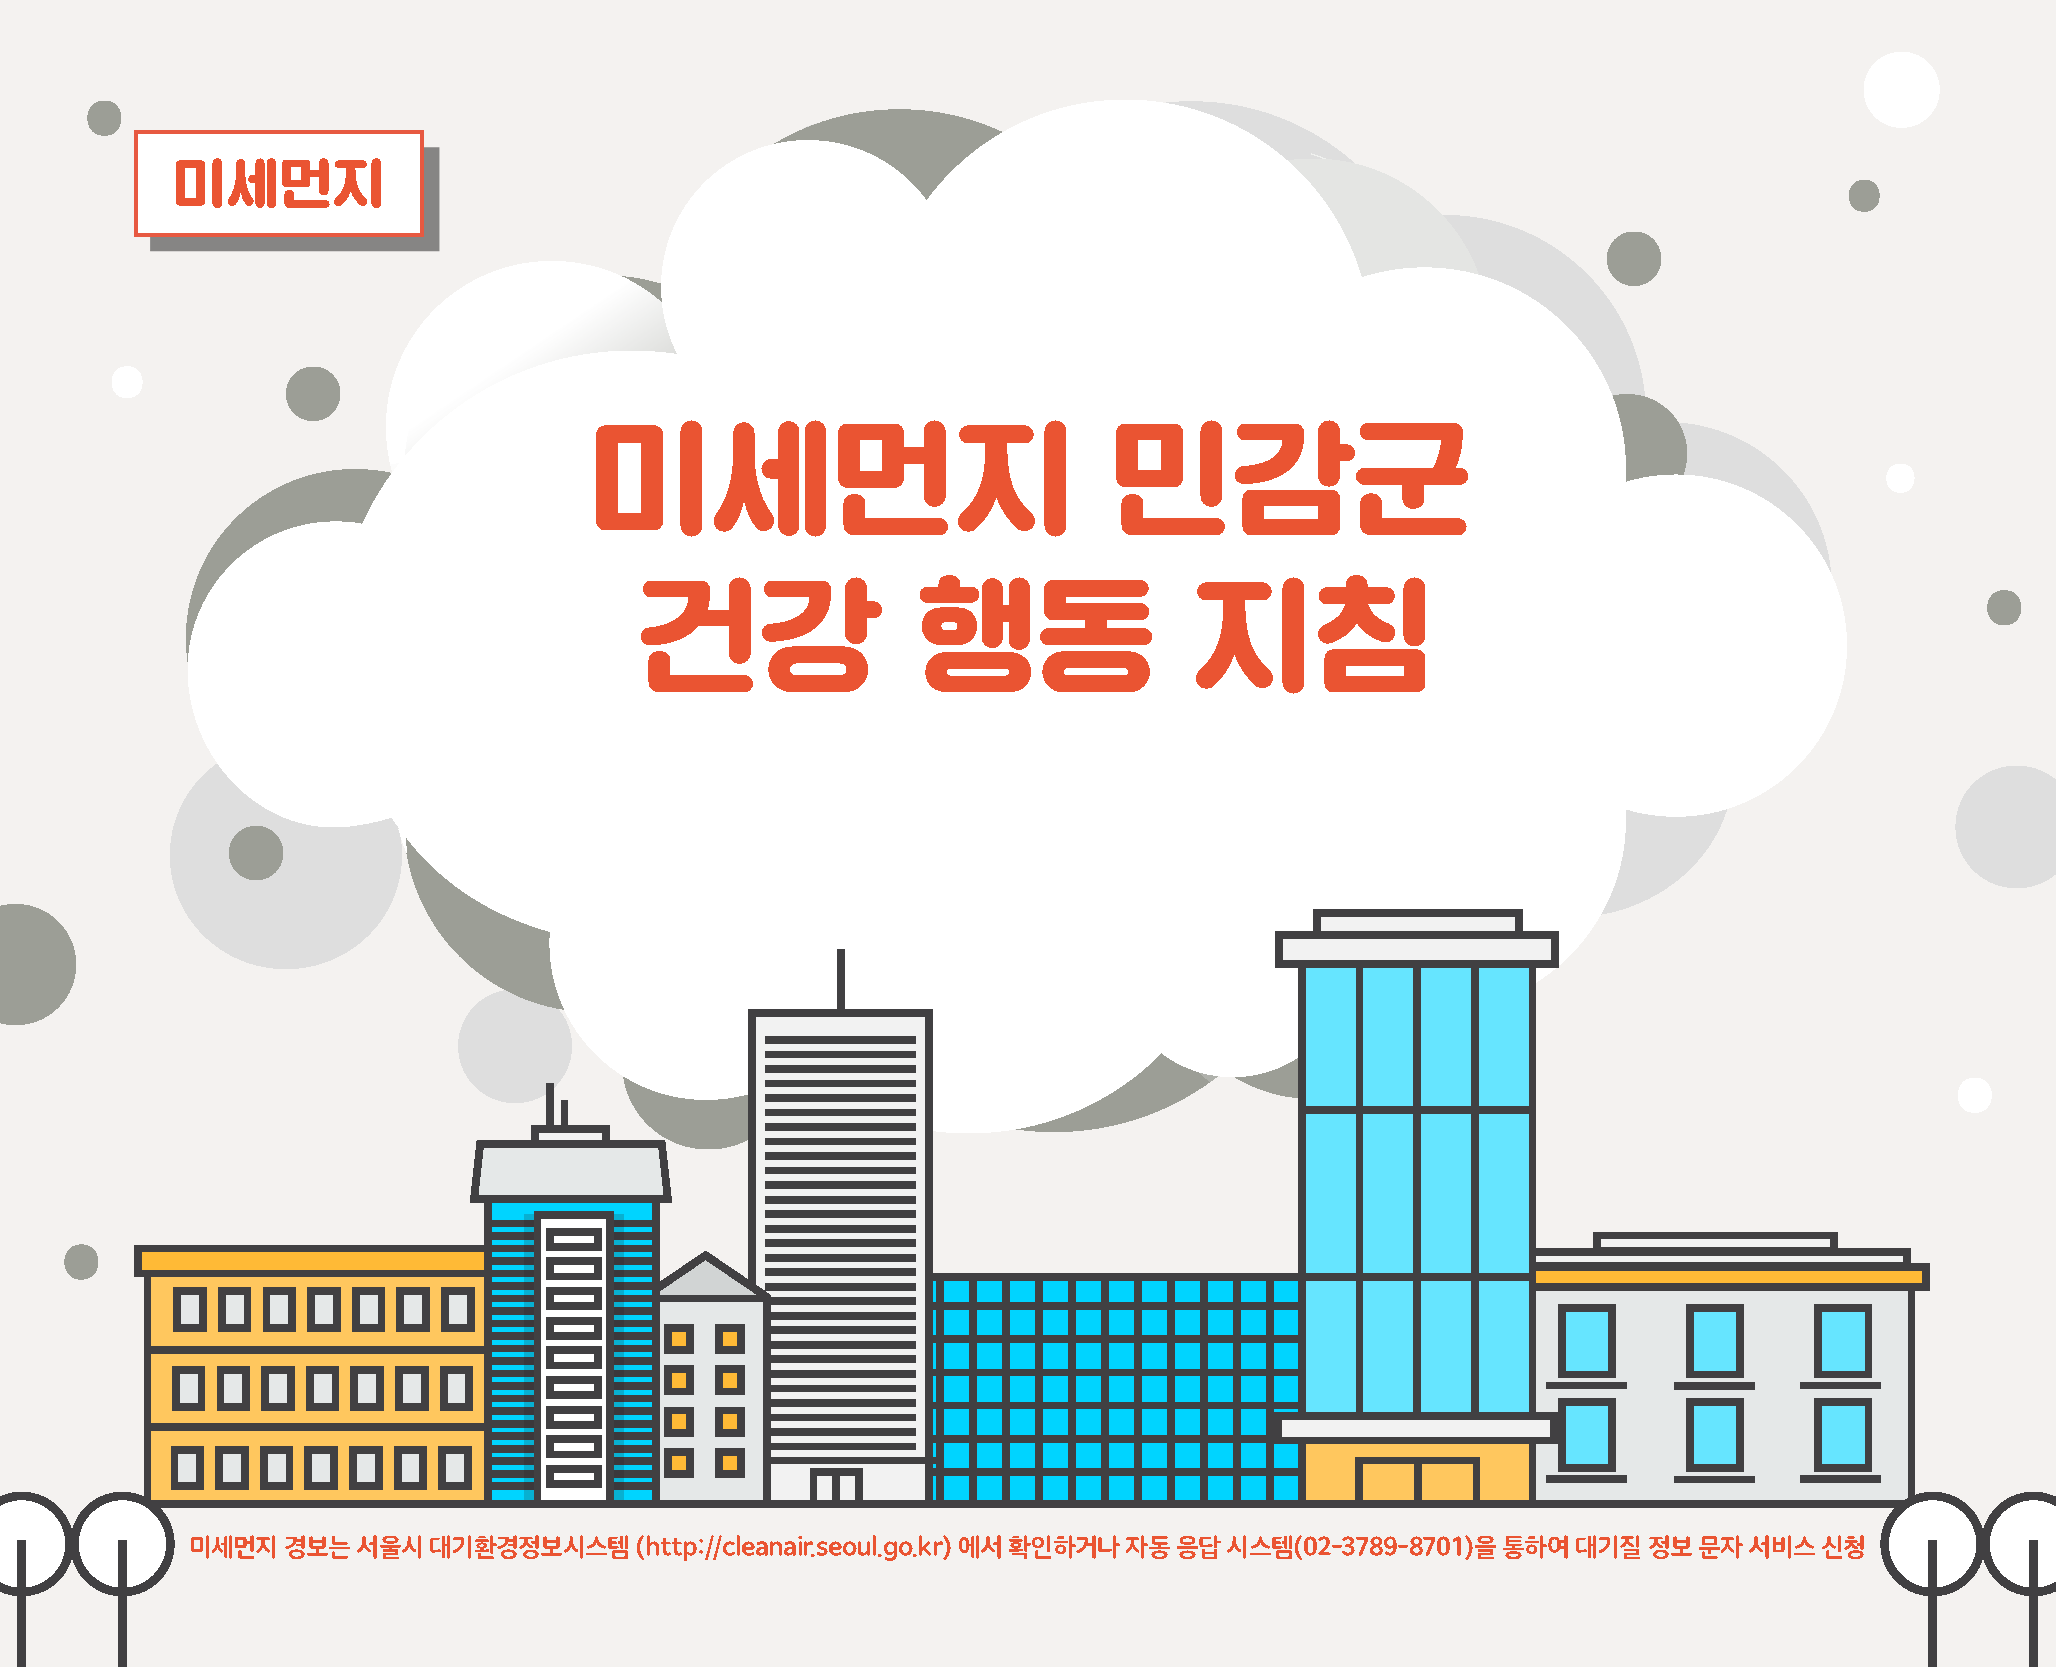 미세먼지 민감군 건강행동 지침 미세먼지 경보는 서울시 대기환경정보시스템(http://cleanair.seoul.go.kr)에서 확인하거나 자동응답시스템(02-3789-8701)을 통하여 대기질 정보 문자서비스 신청